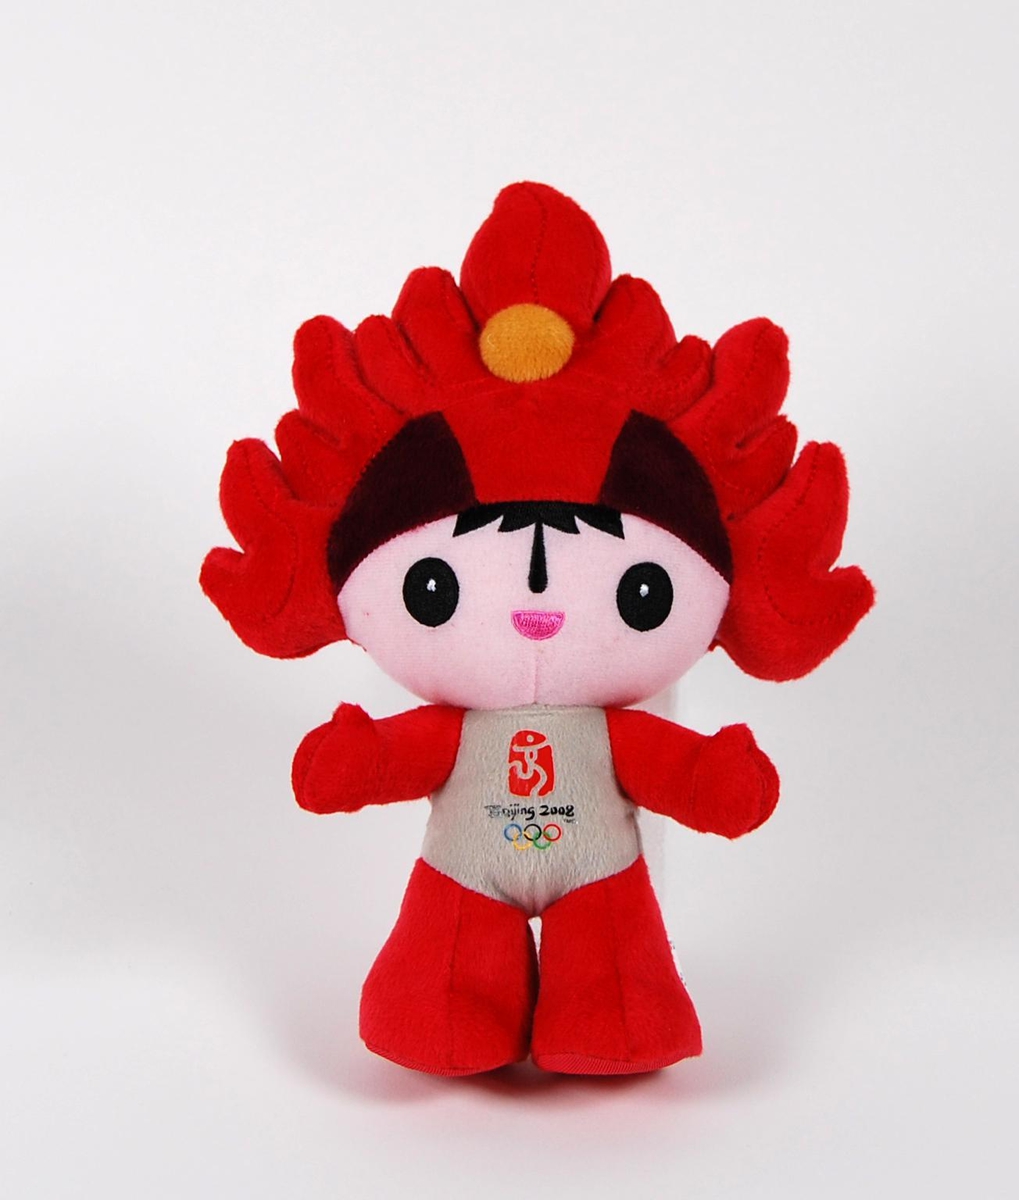 Tøyfigur av maskoten Huanhuan. Huanhuan skulle forestille den olympiske ild. Figuren har hovedfargen rød, og det er laminert en logo for de olympiske sommerleker i Beijing i 2008 på maven til figuren.